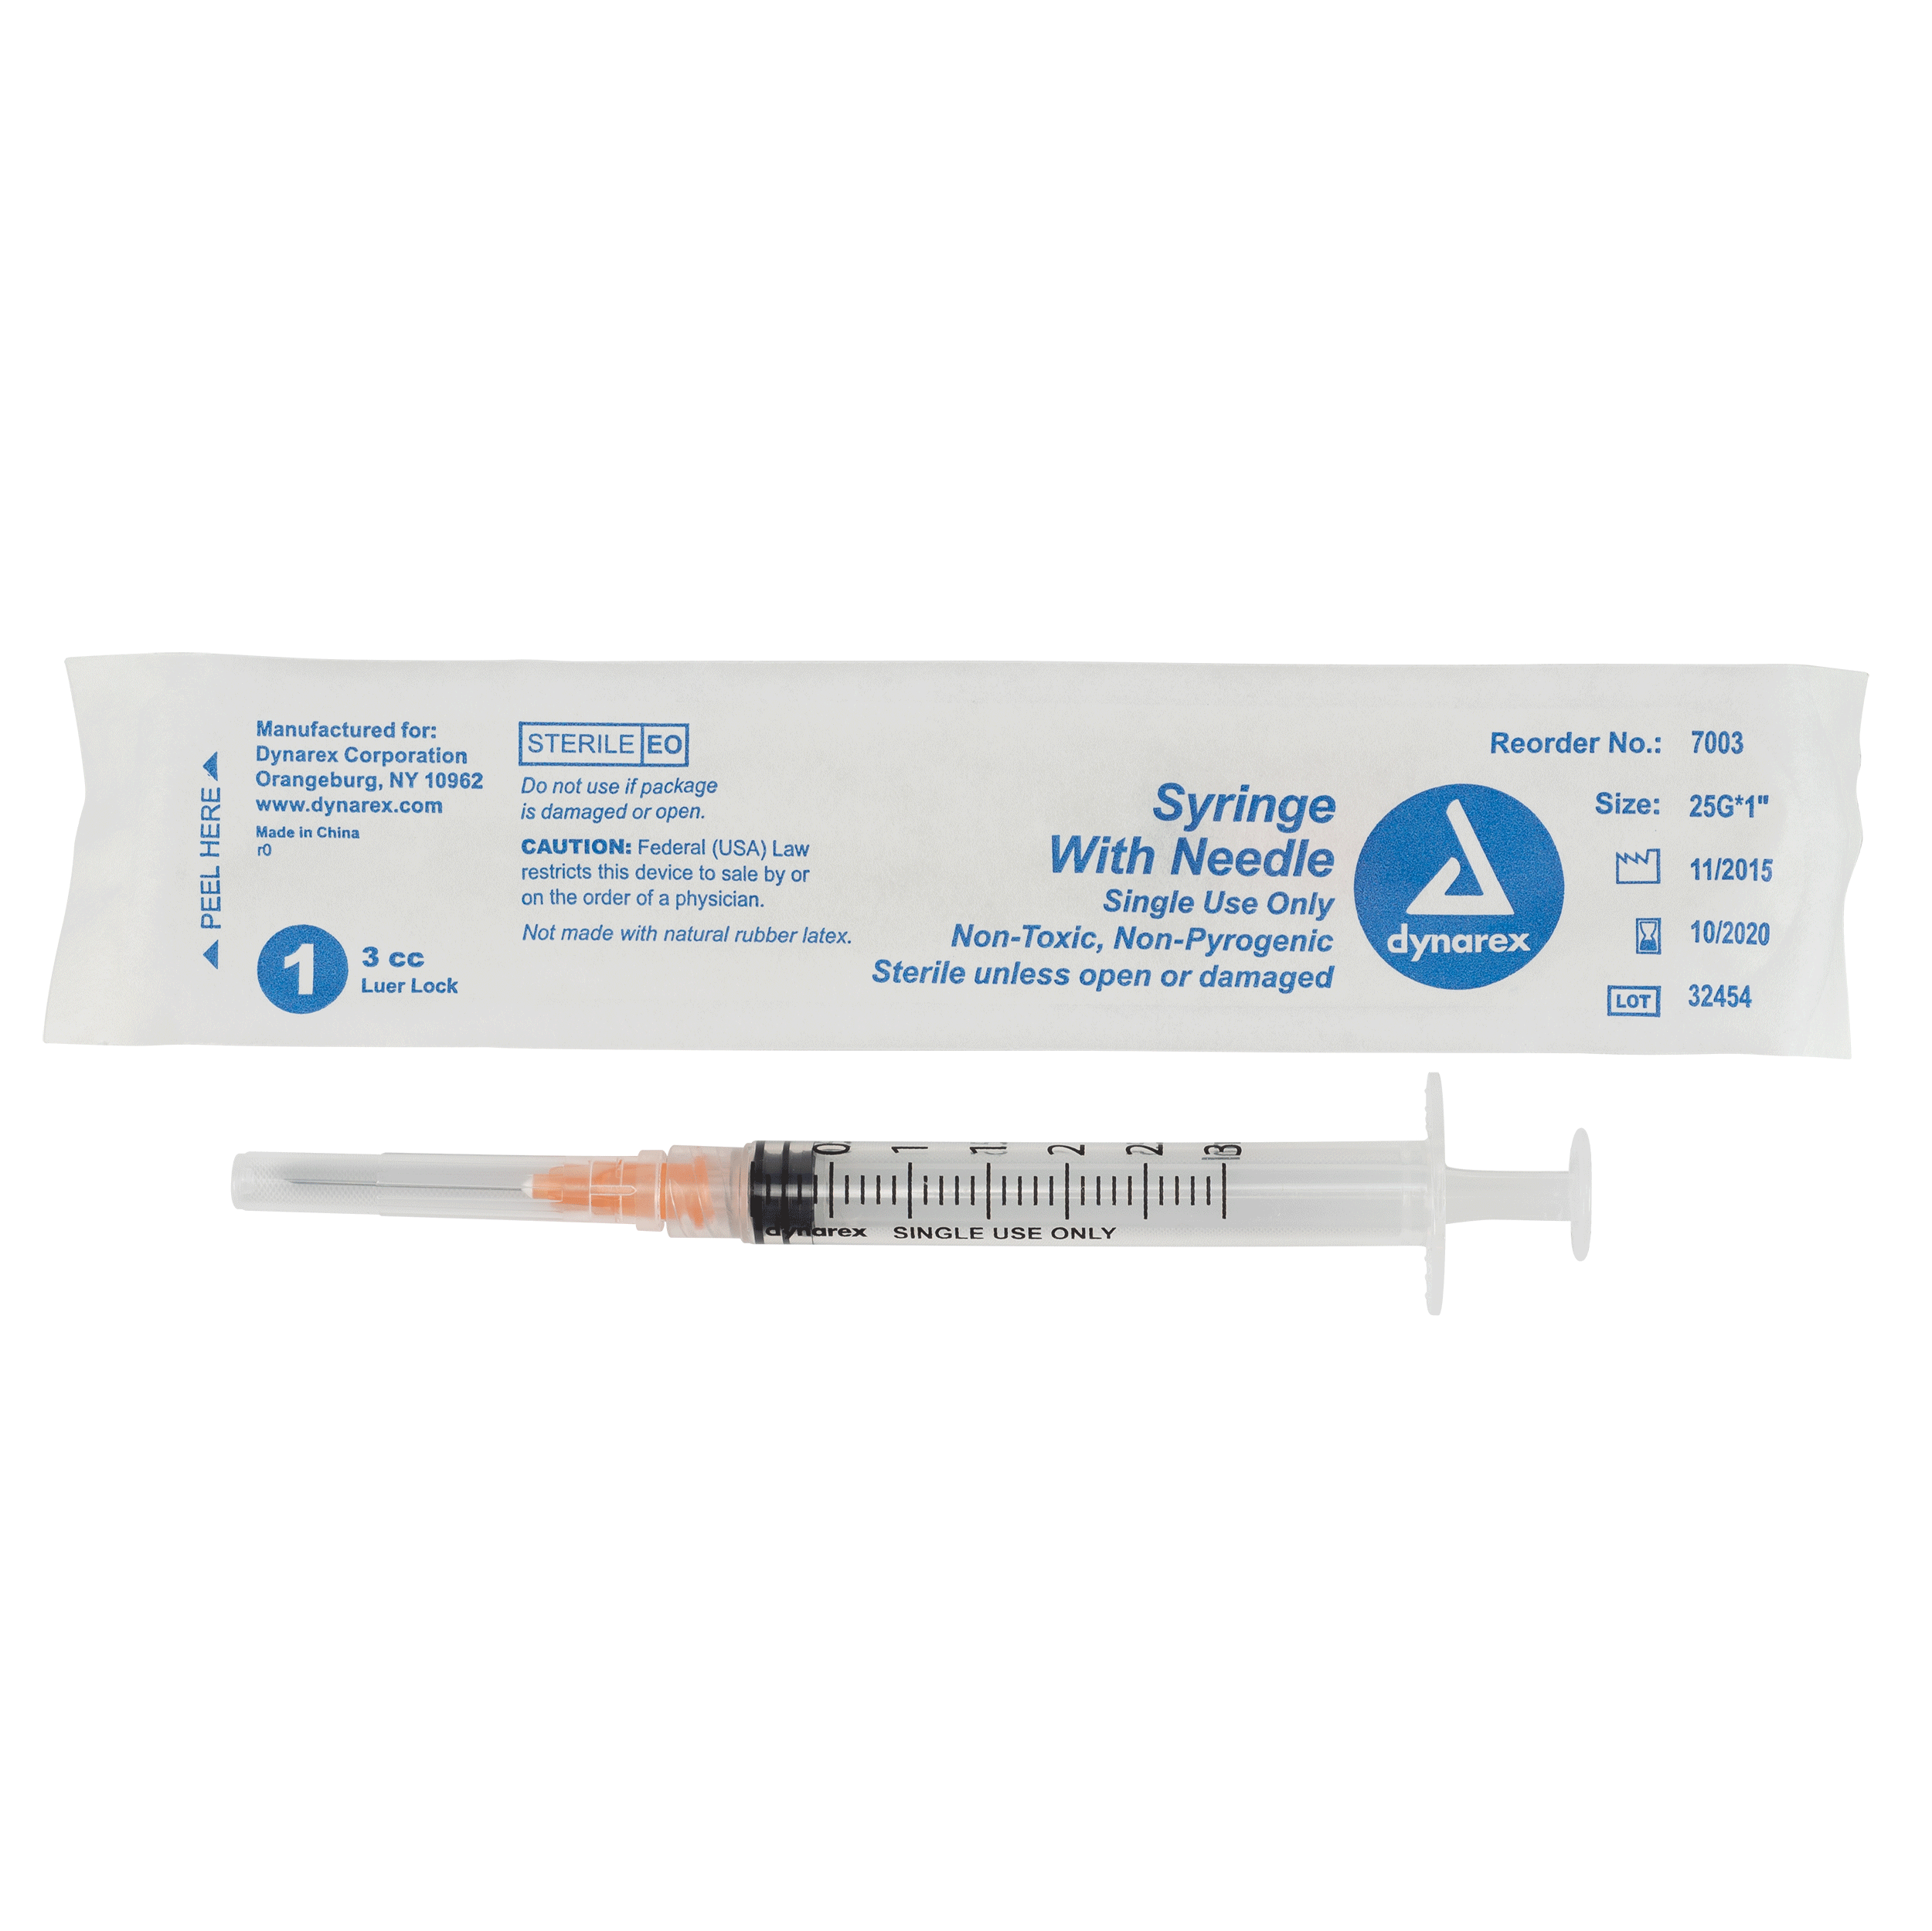 Syringes With Needle – 3cc – 25G, 1″ Needle